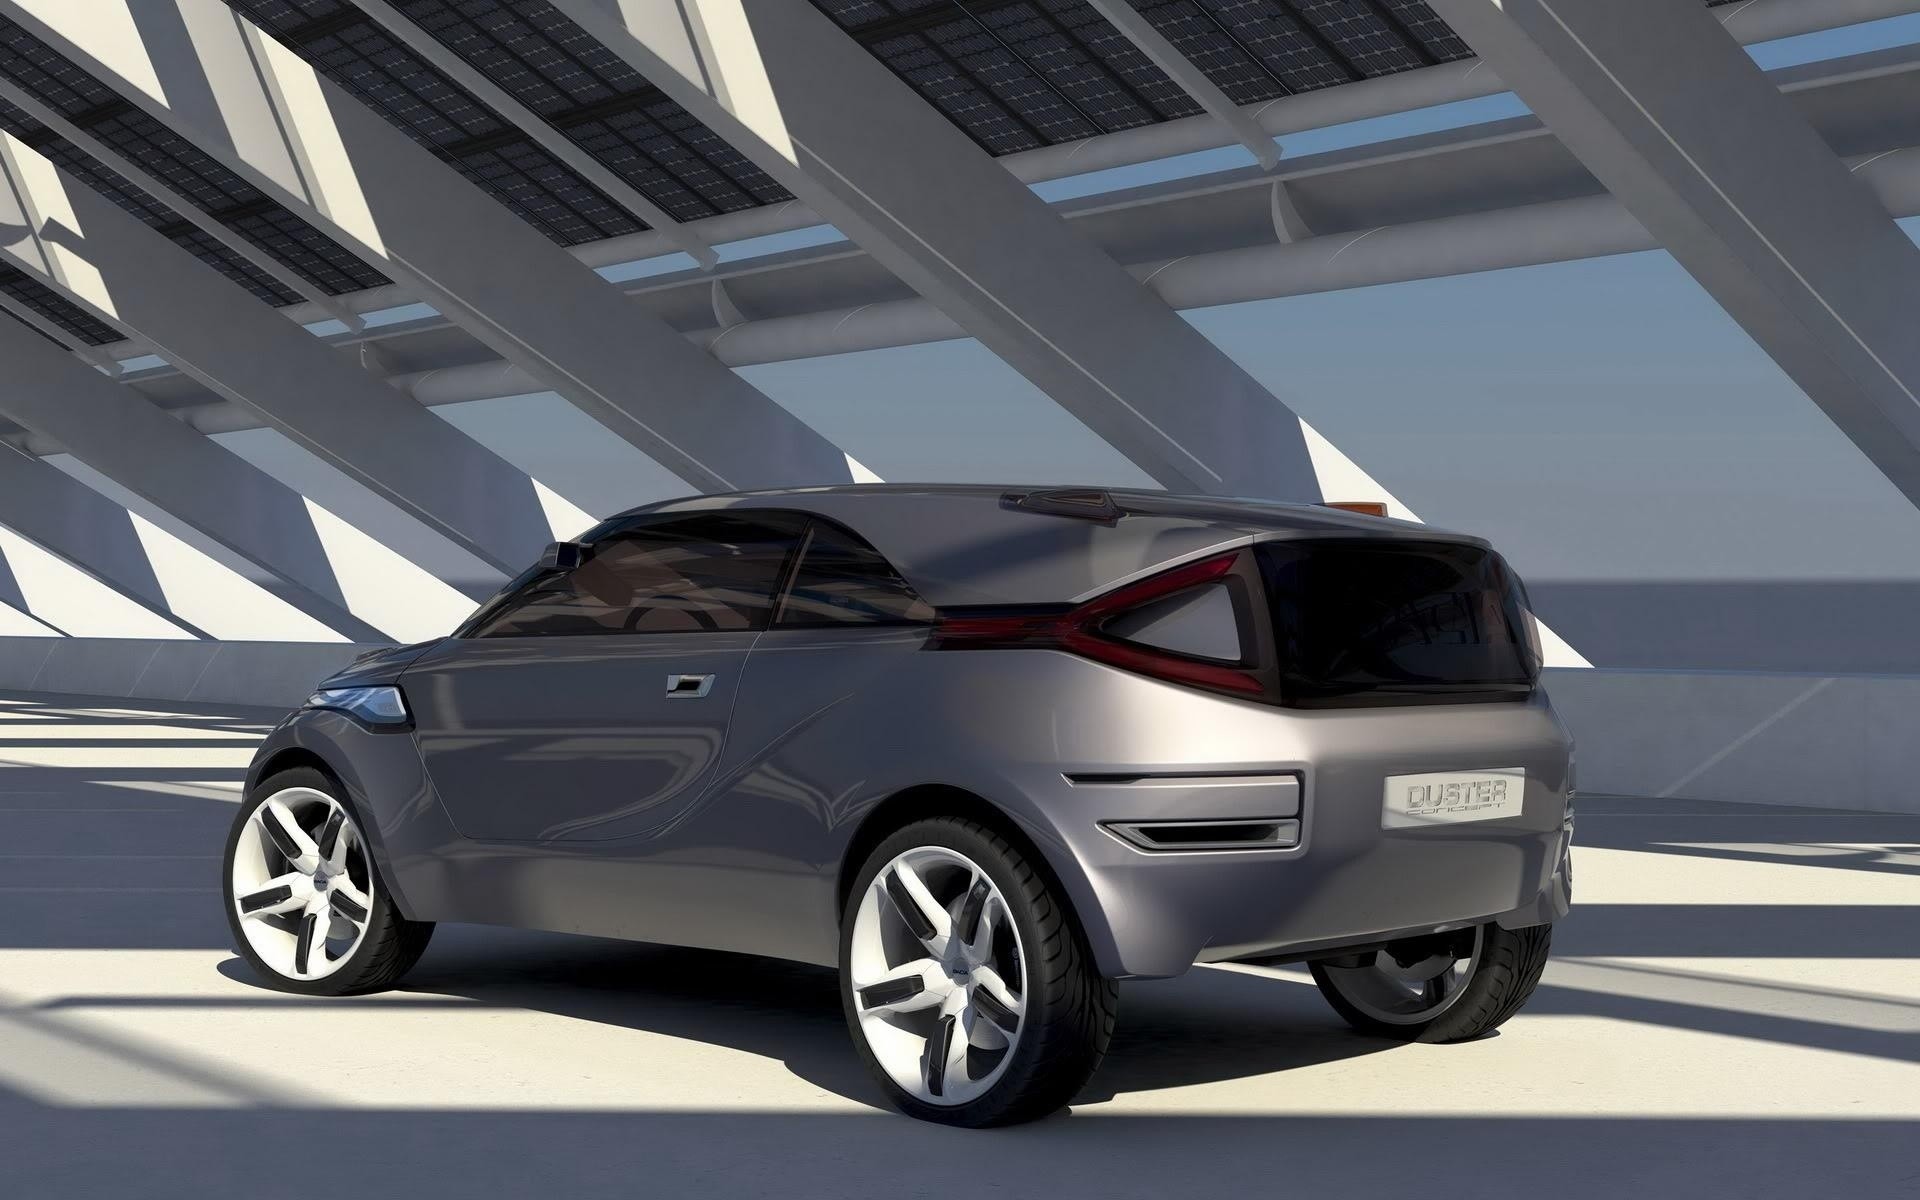 concept cars car vehicle automotive transportation system show exhibition drive